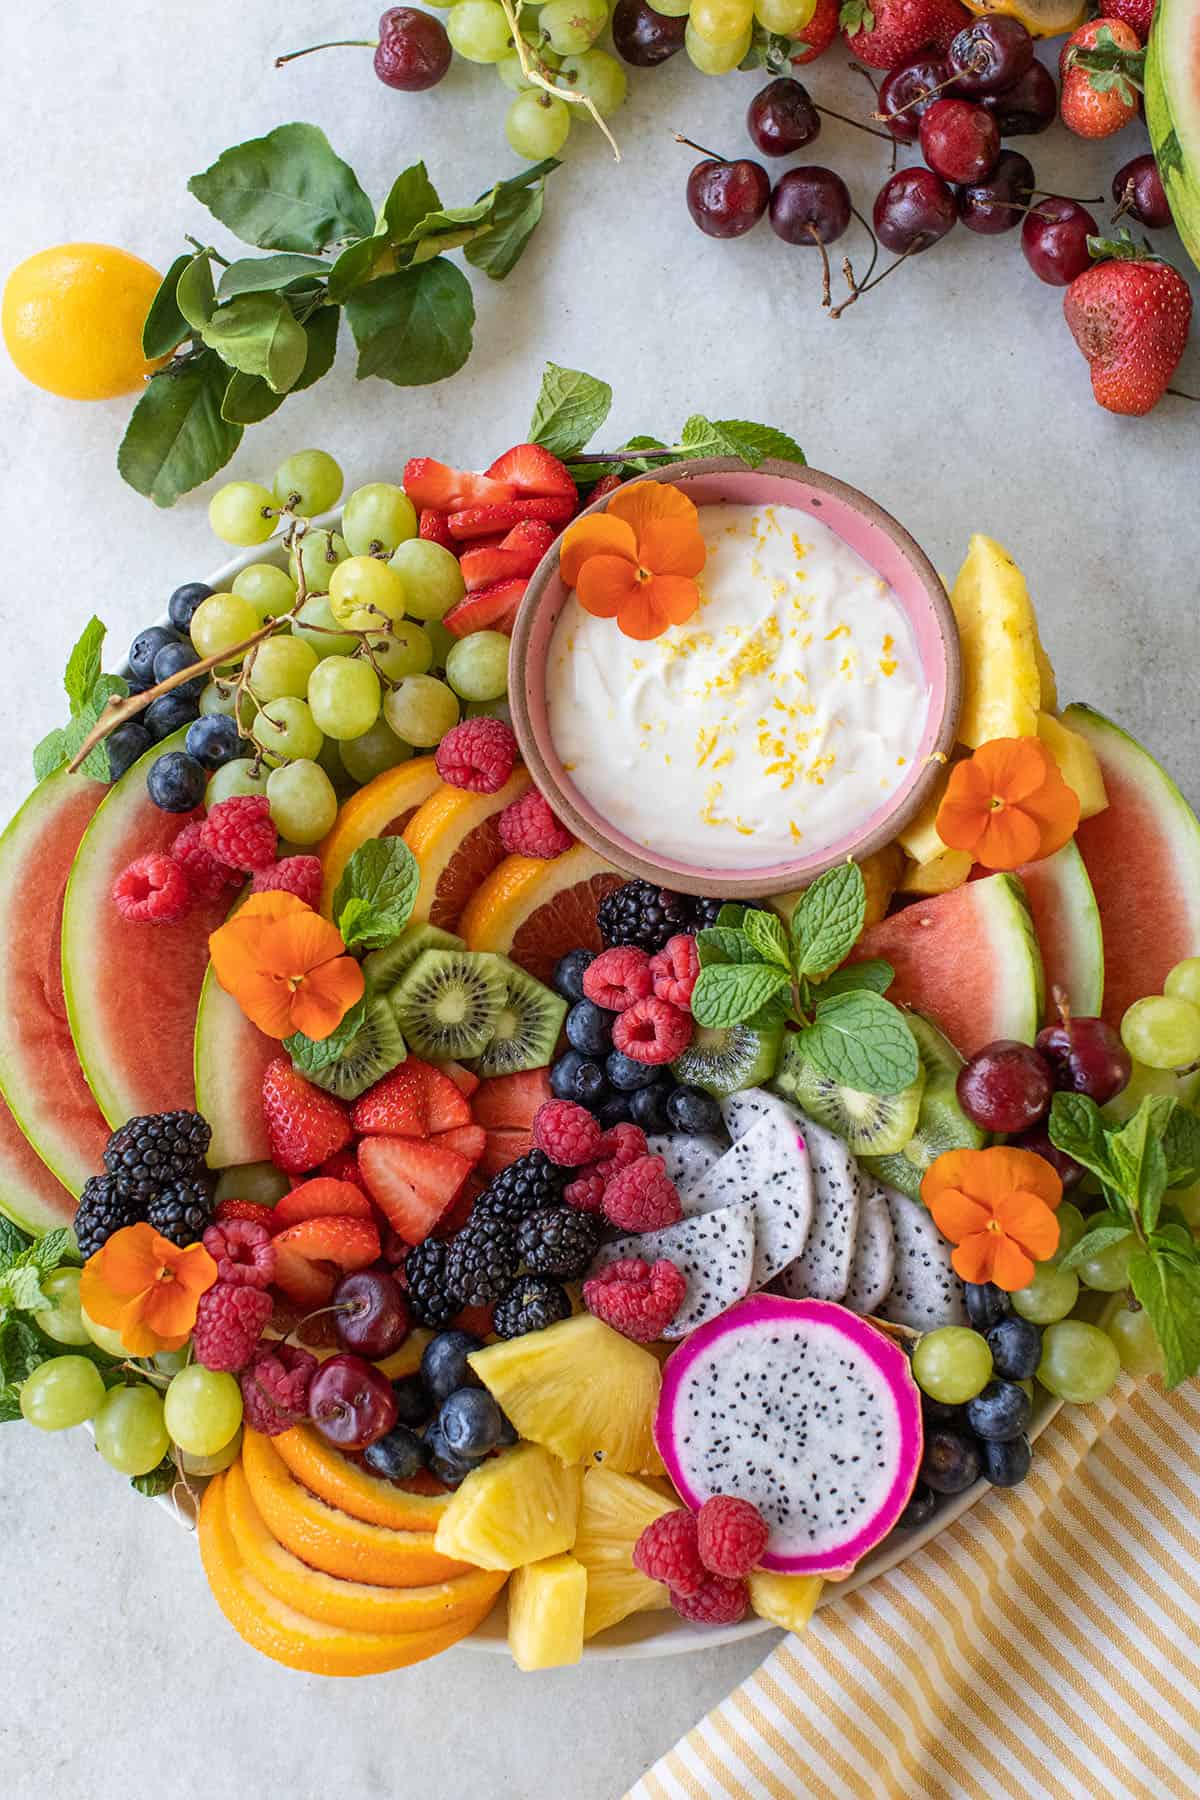 Easy fresh fruit platter with fruit dip, berries, sliced fresh fruit on a platter.